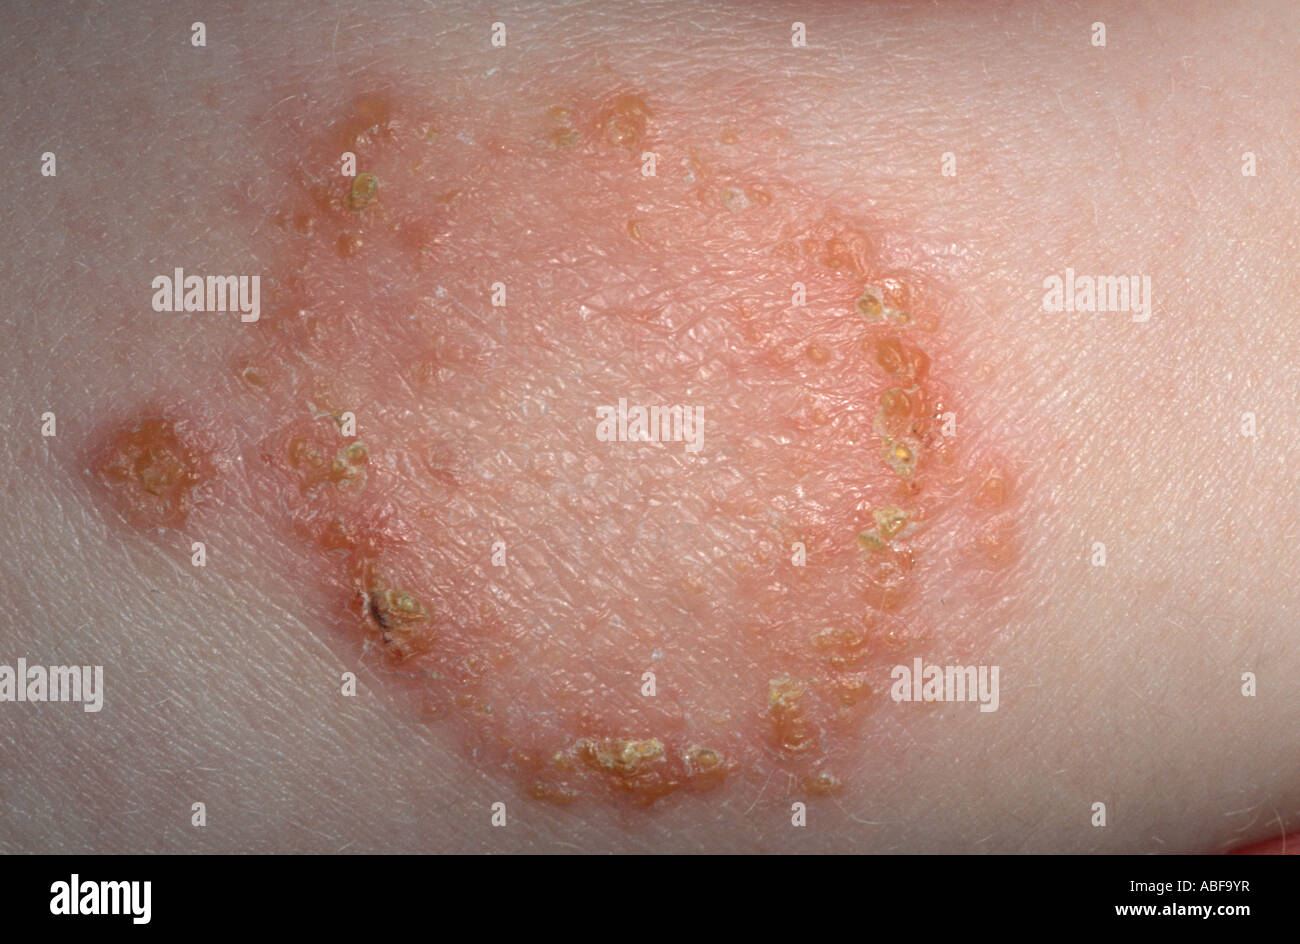 Impétigo, una infección superficial por Staphylococcus aureus. Las vesículas se rompen formando costras de color miel. Foto de stock